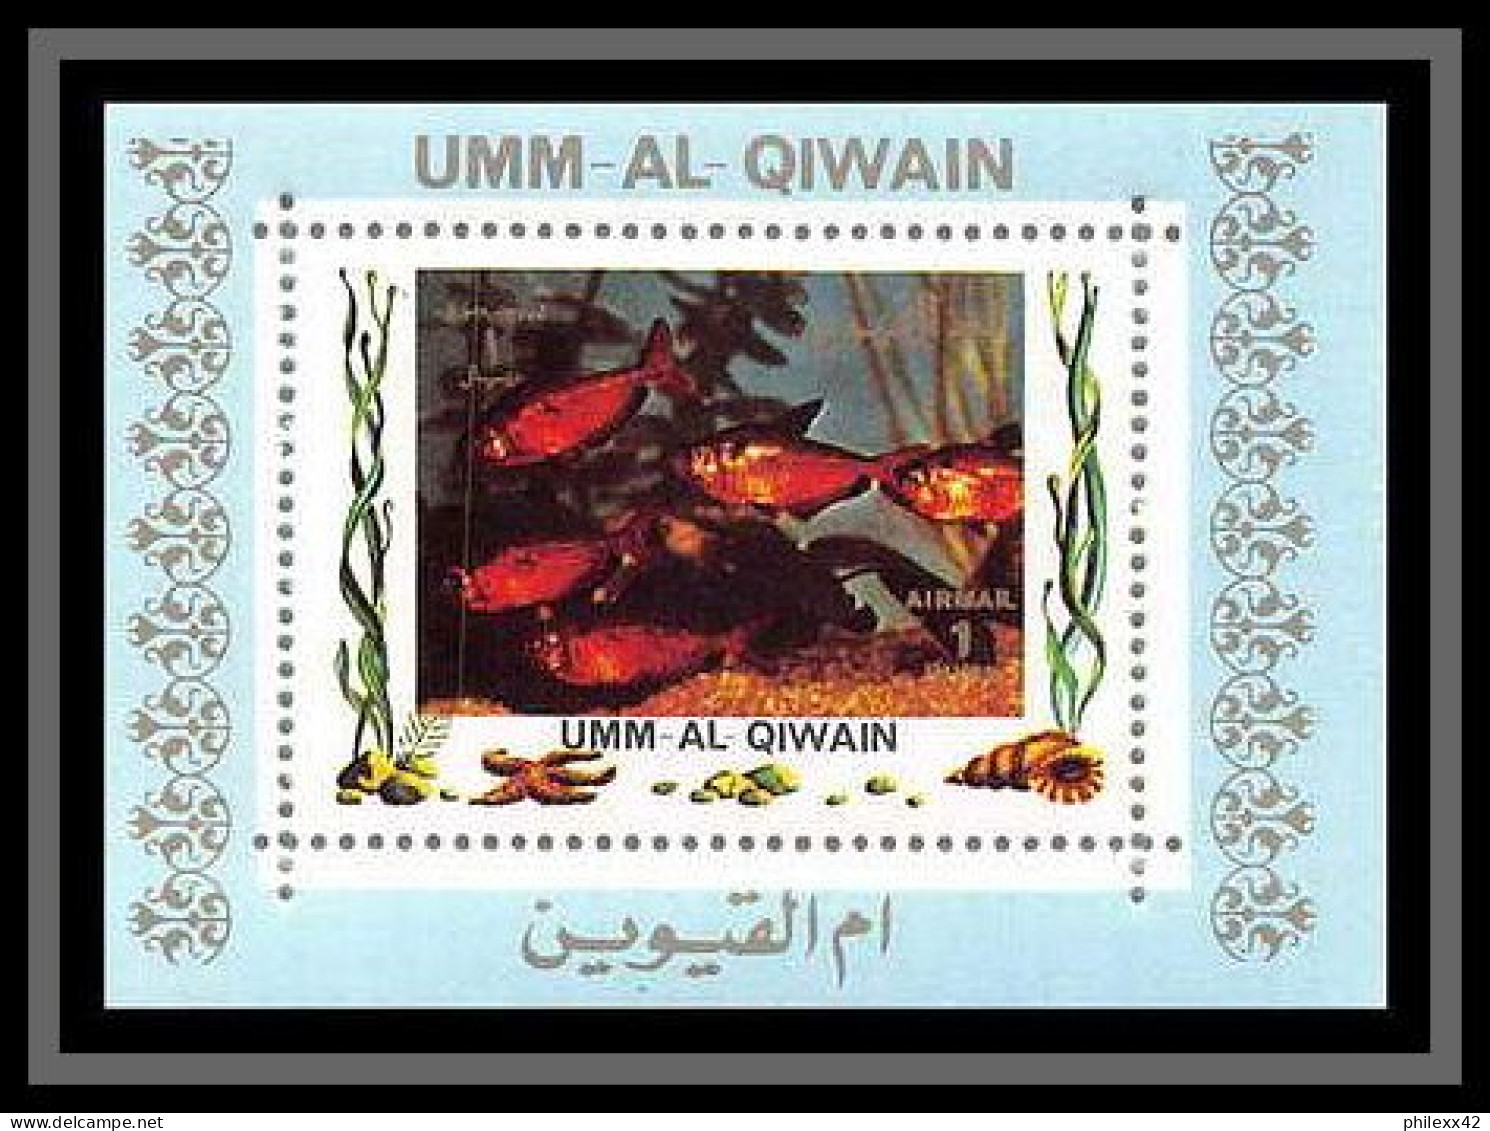 0029/ Umm al Qiwain deluxe blocs ** MNH michel N° 1466 / 1481 tropical - poissons (Fish) tirage bleu